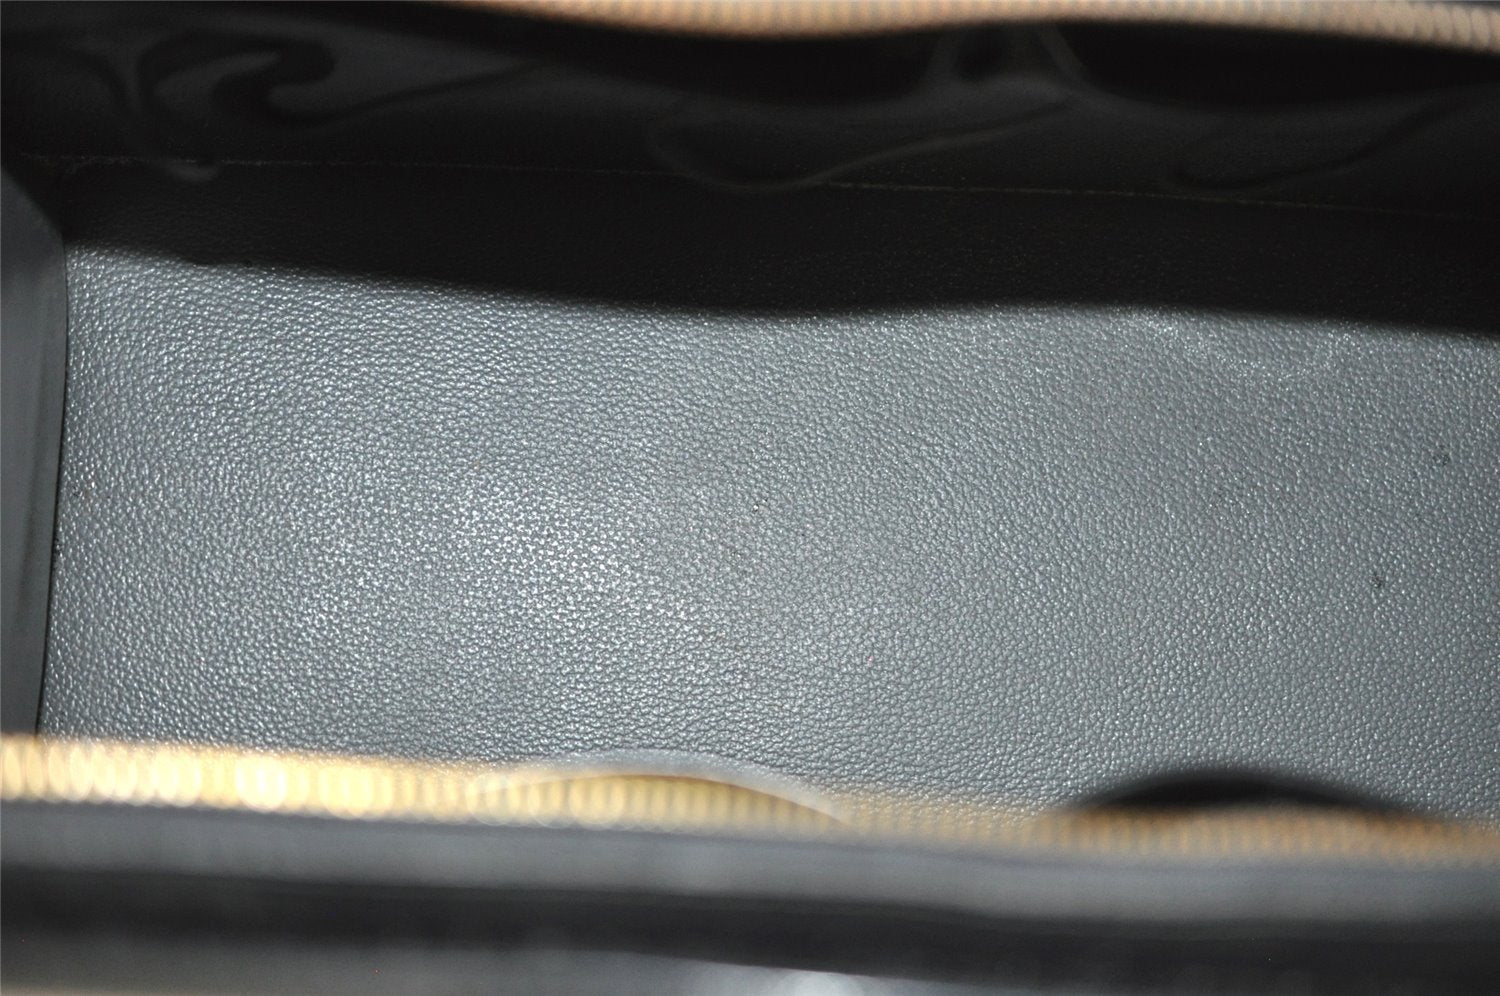 Authentic Louis Vuitton Epi Riviera Hand Bag Black M48182 LV 9385J